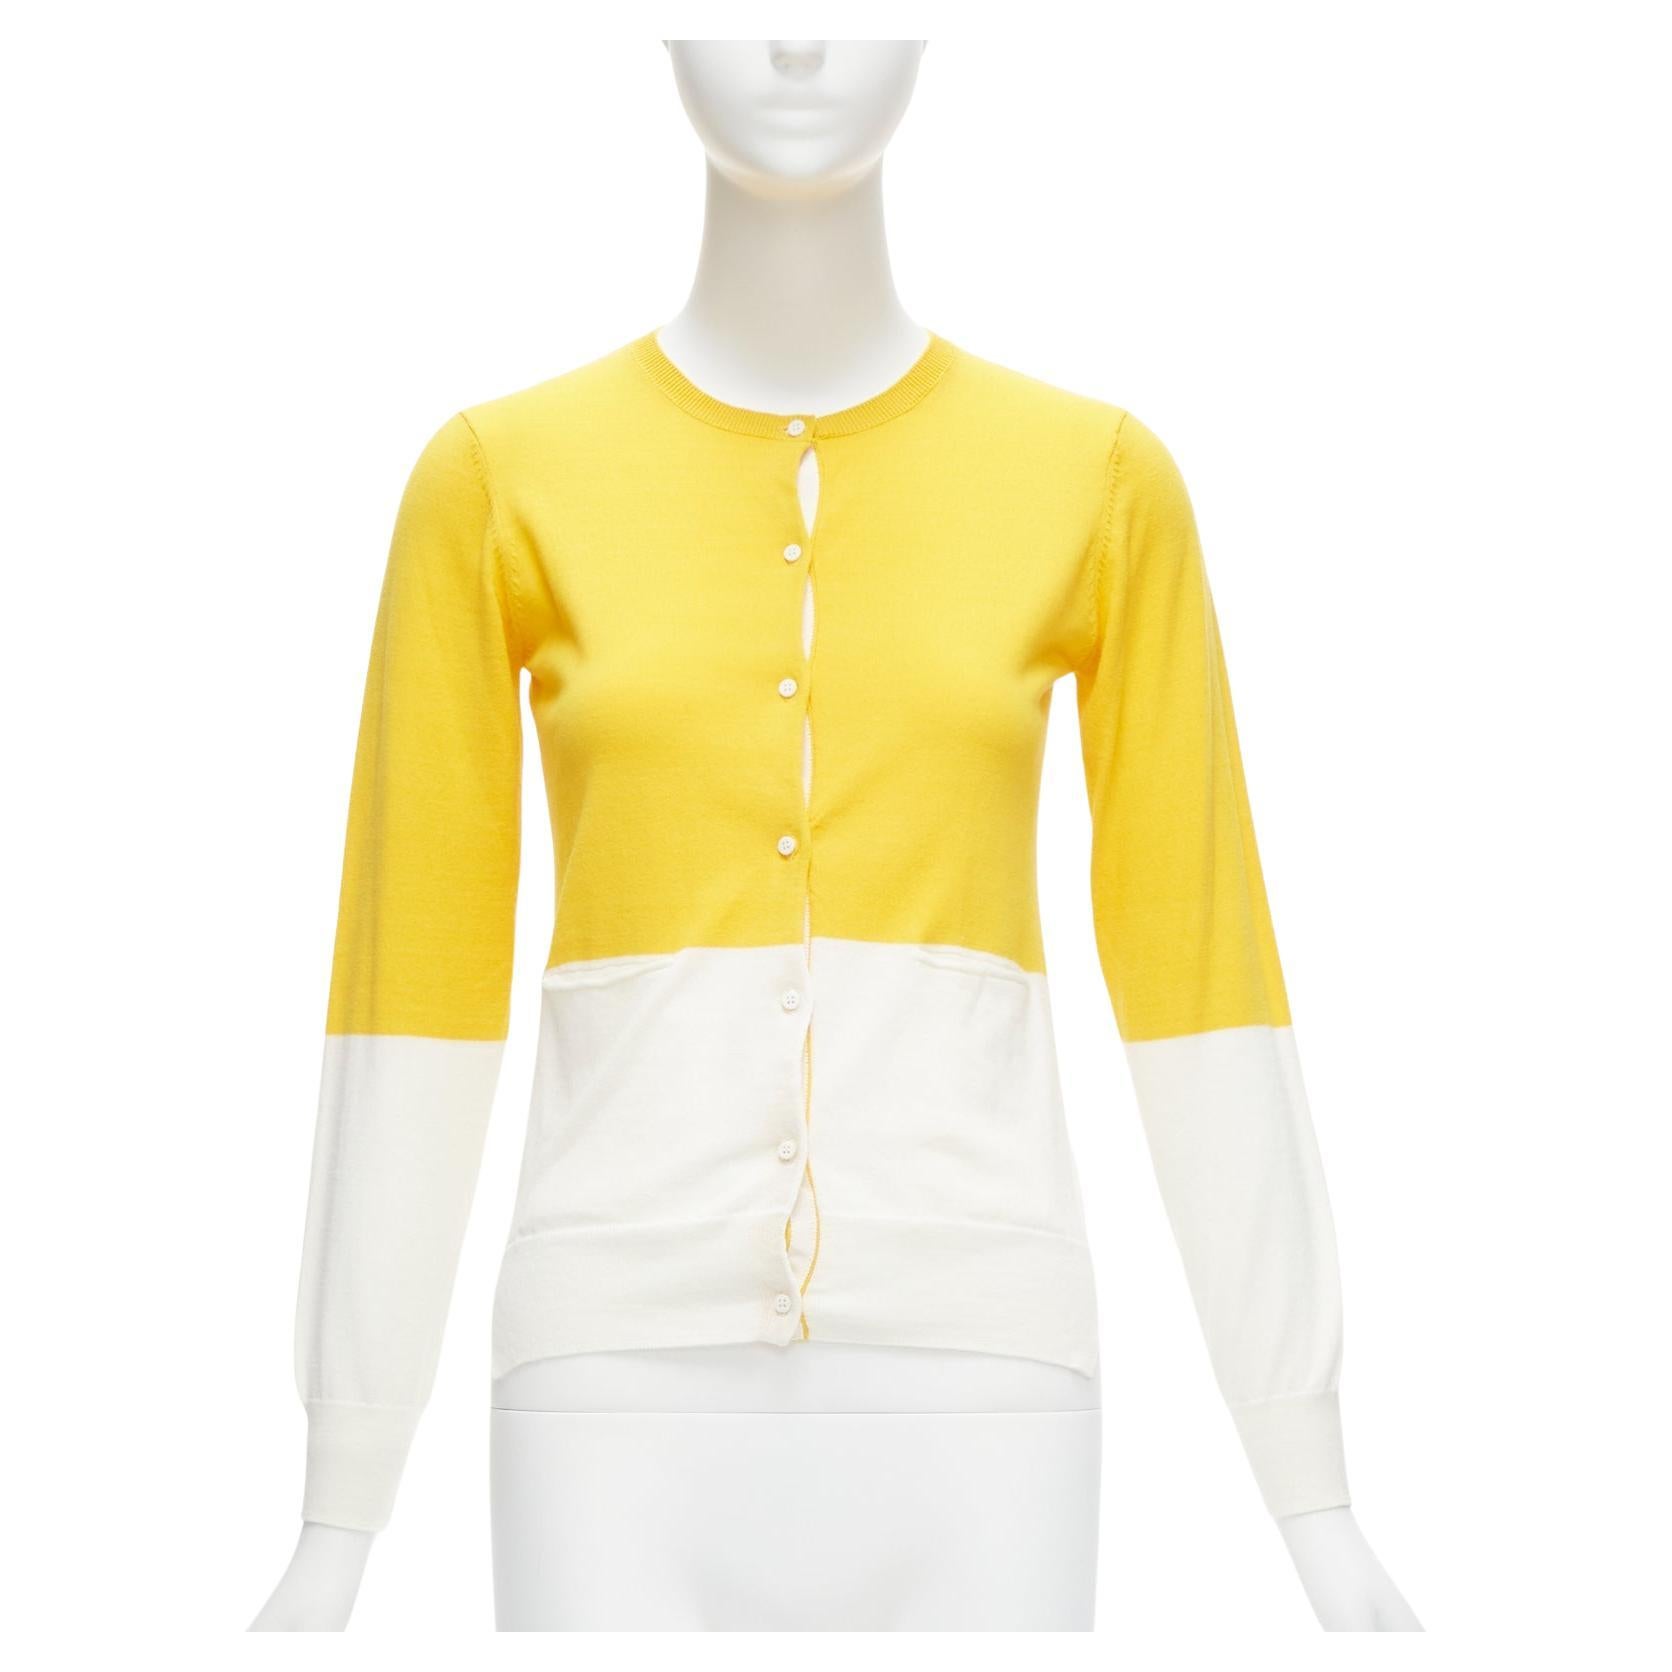 STELLA MCCARTNEY gelb weißer Colorblock-Baumwollpullover mit Taschen, 12 Jahre